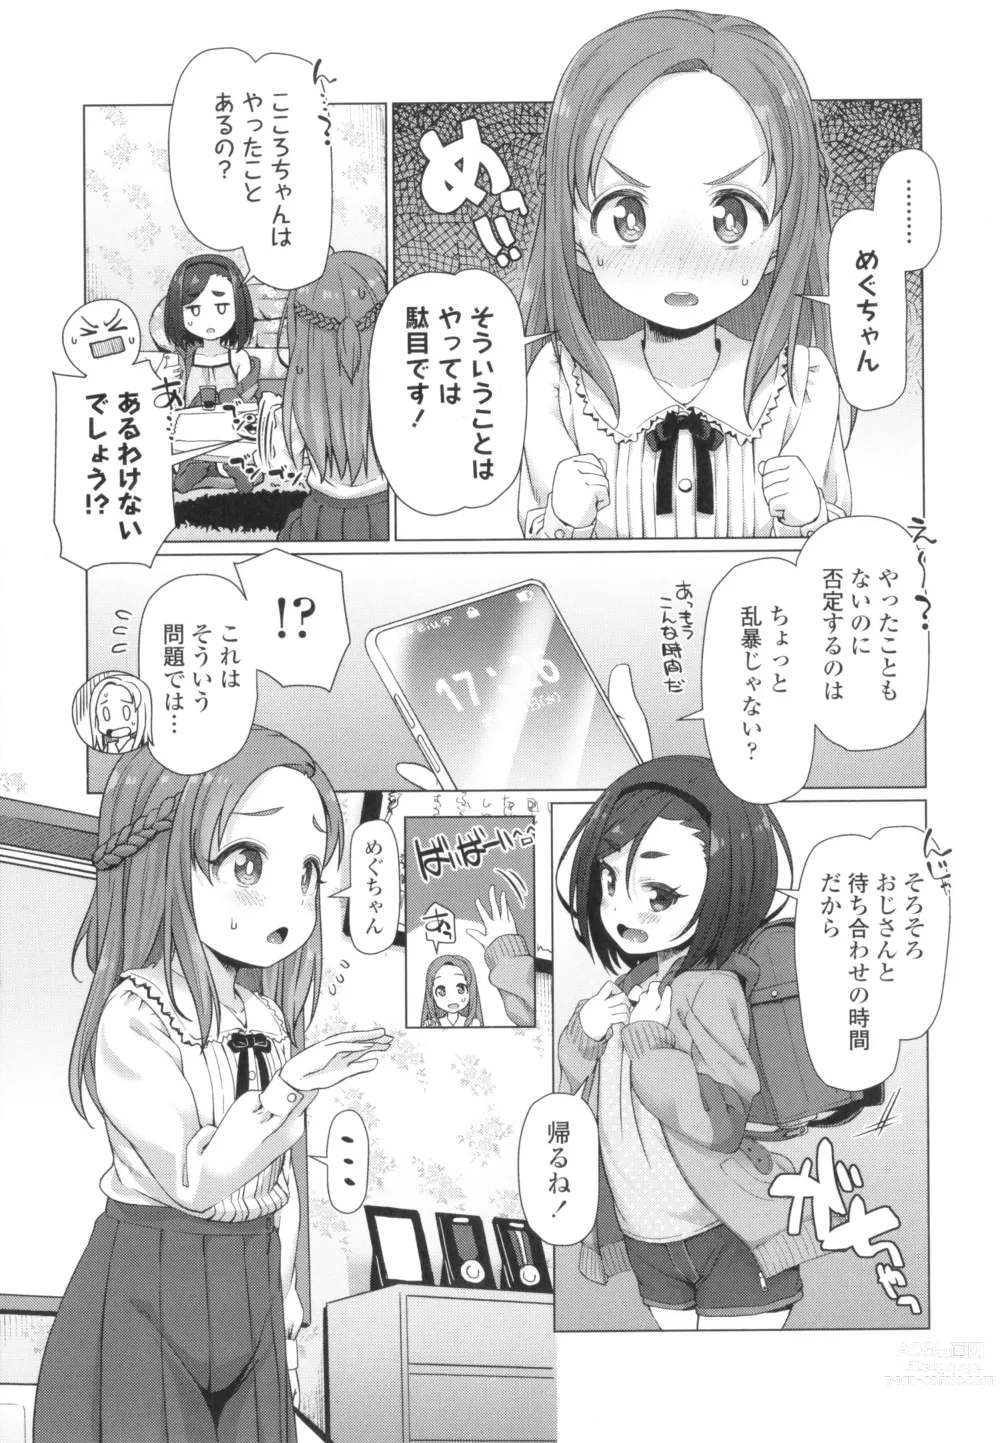 Page 8 of manga Nukunuku Mini Holes